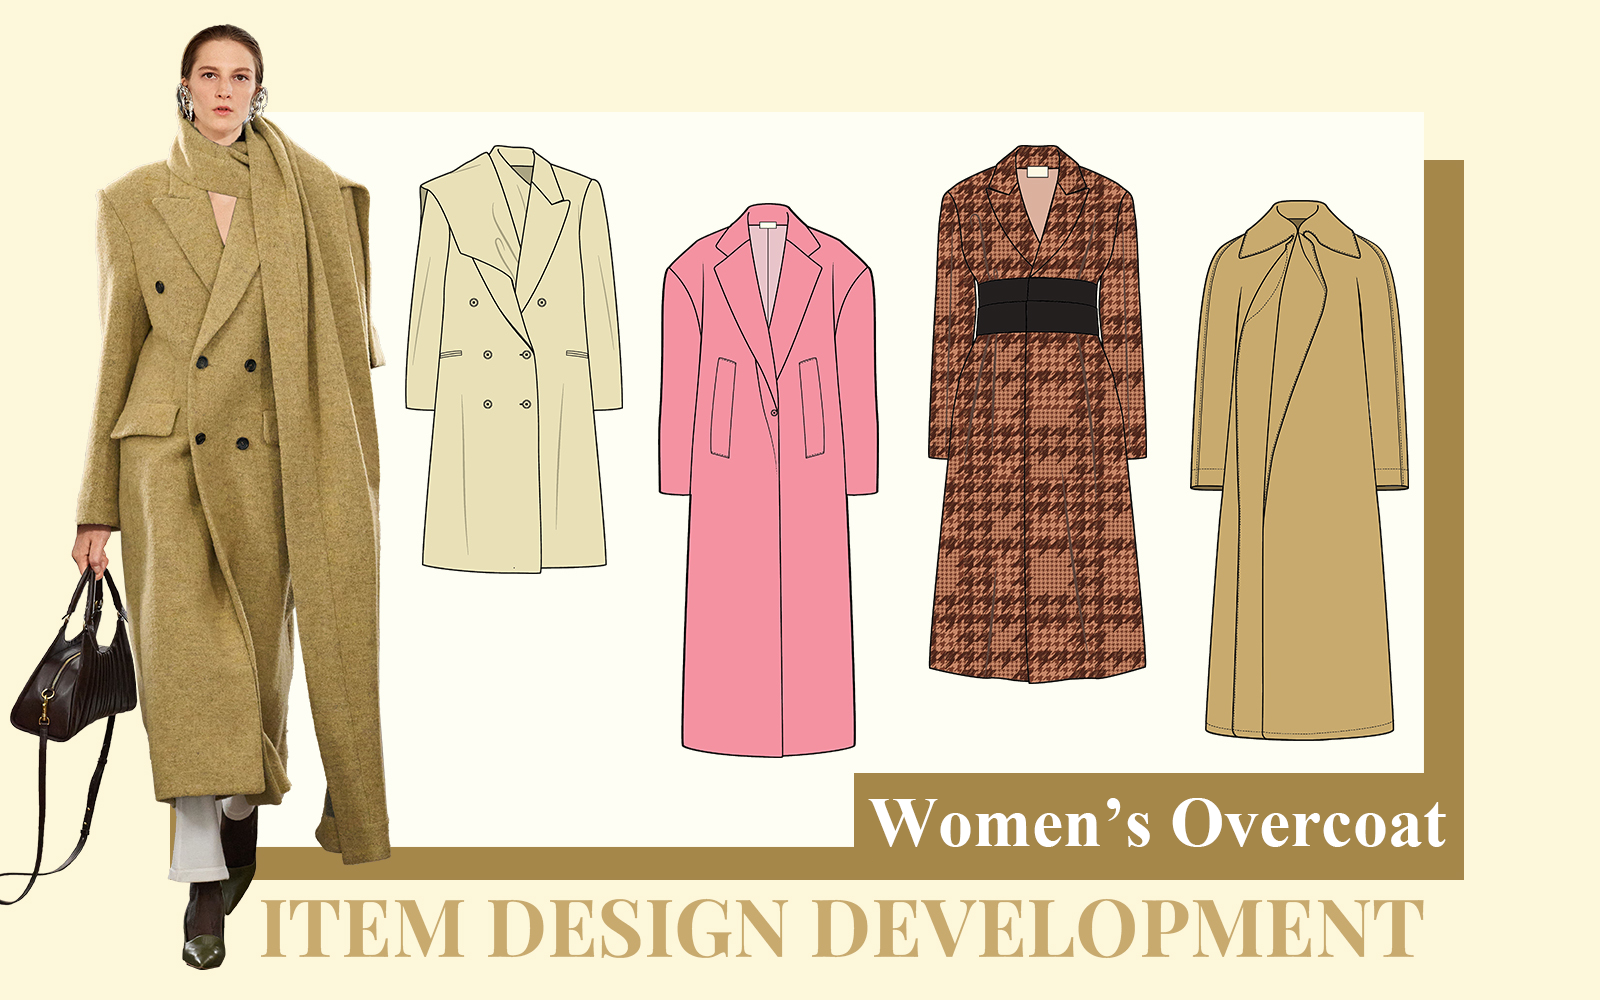 The Design Development of Women's Overcoat